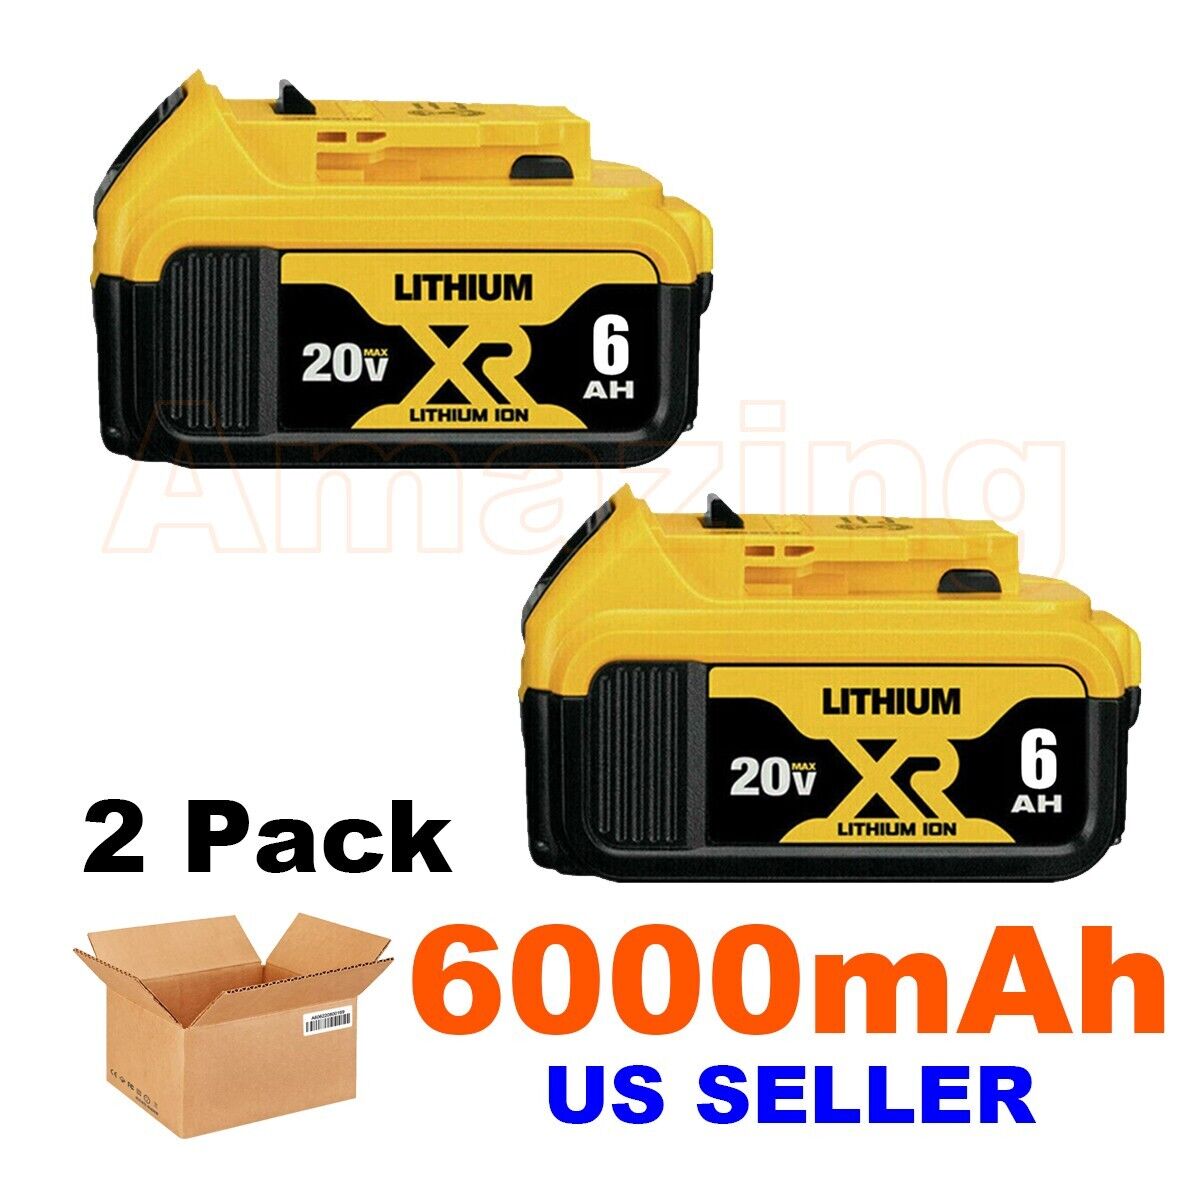 2 PACK For DeWalt 20 Volt Max XR 6.0AH Lithium Ion Battery DCB206-2 DCB205-2 20V